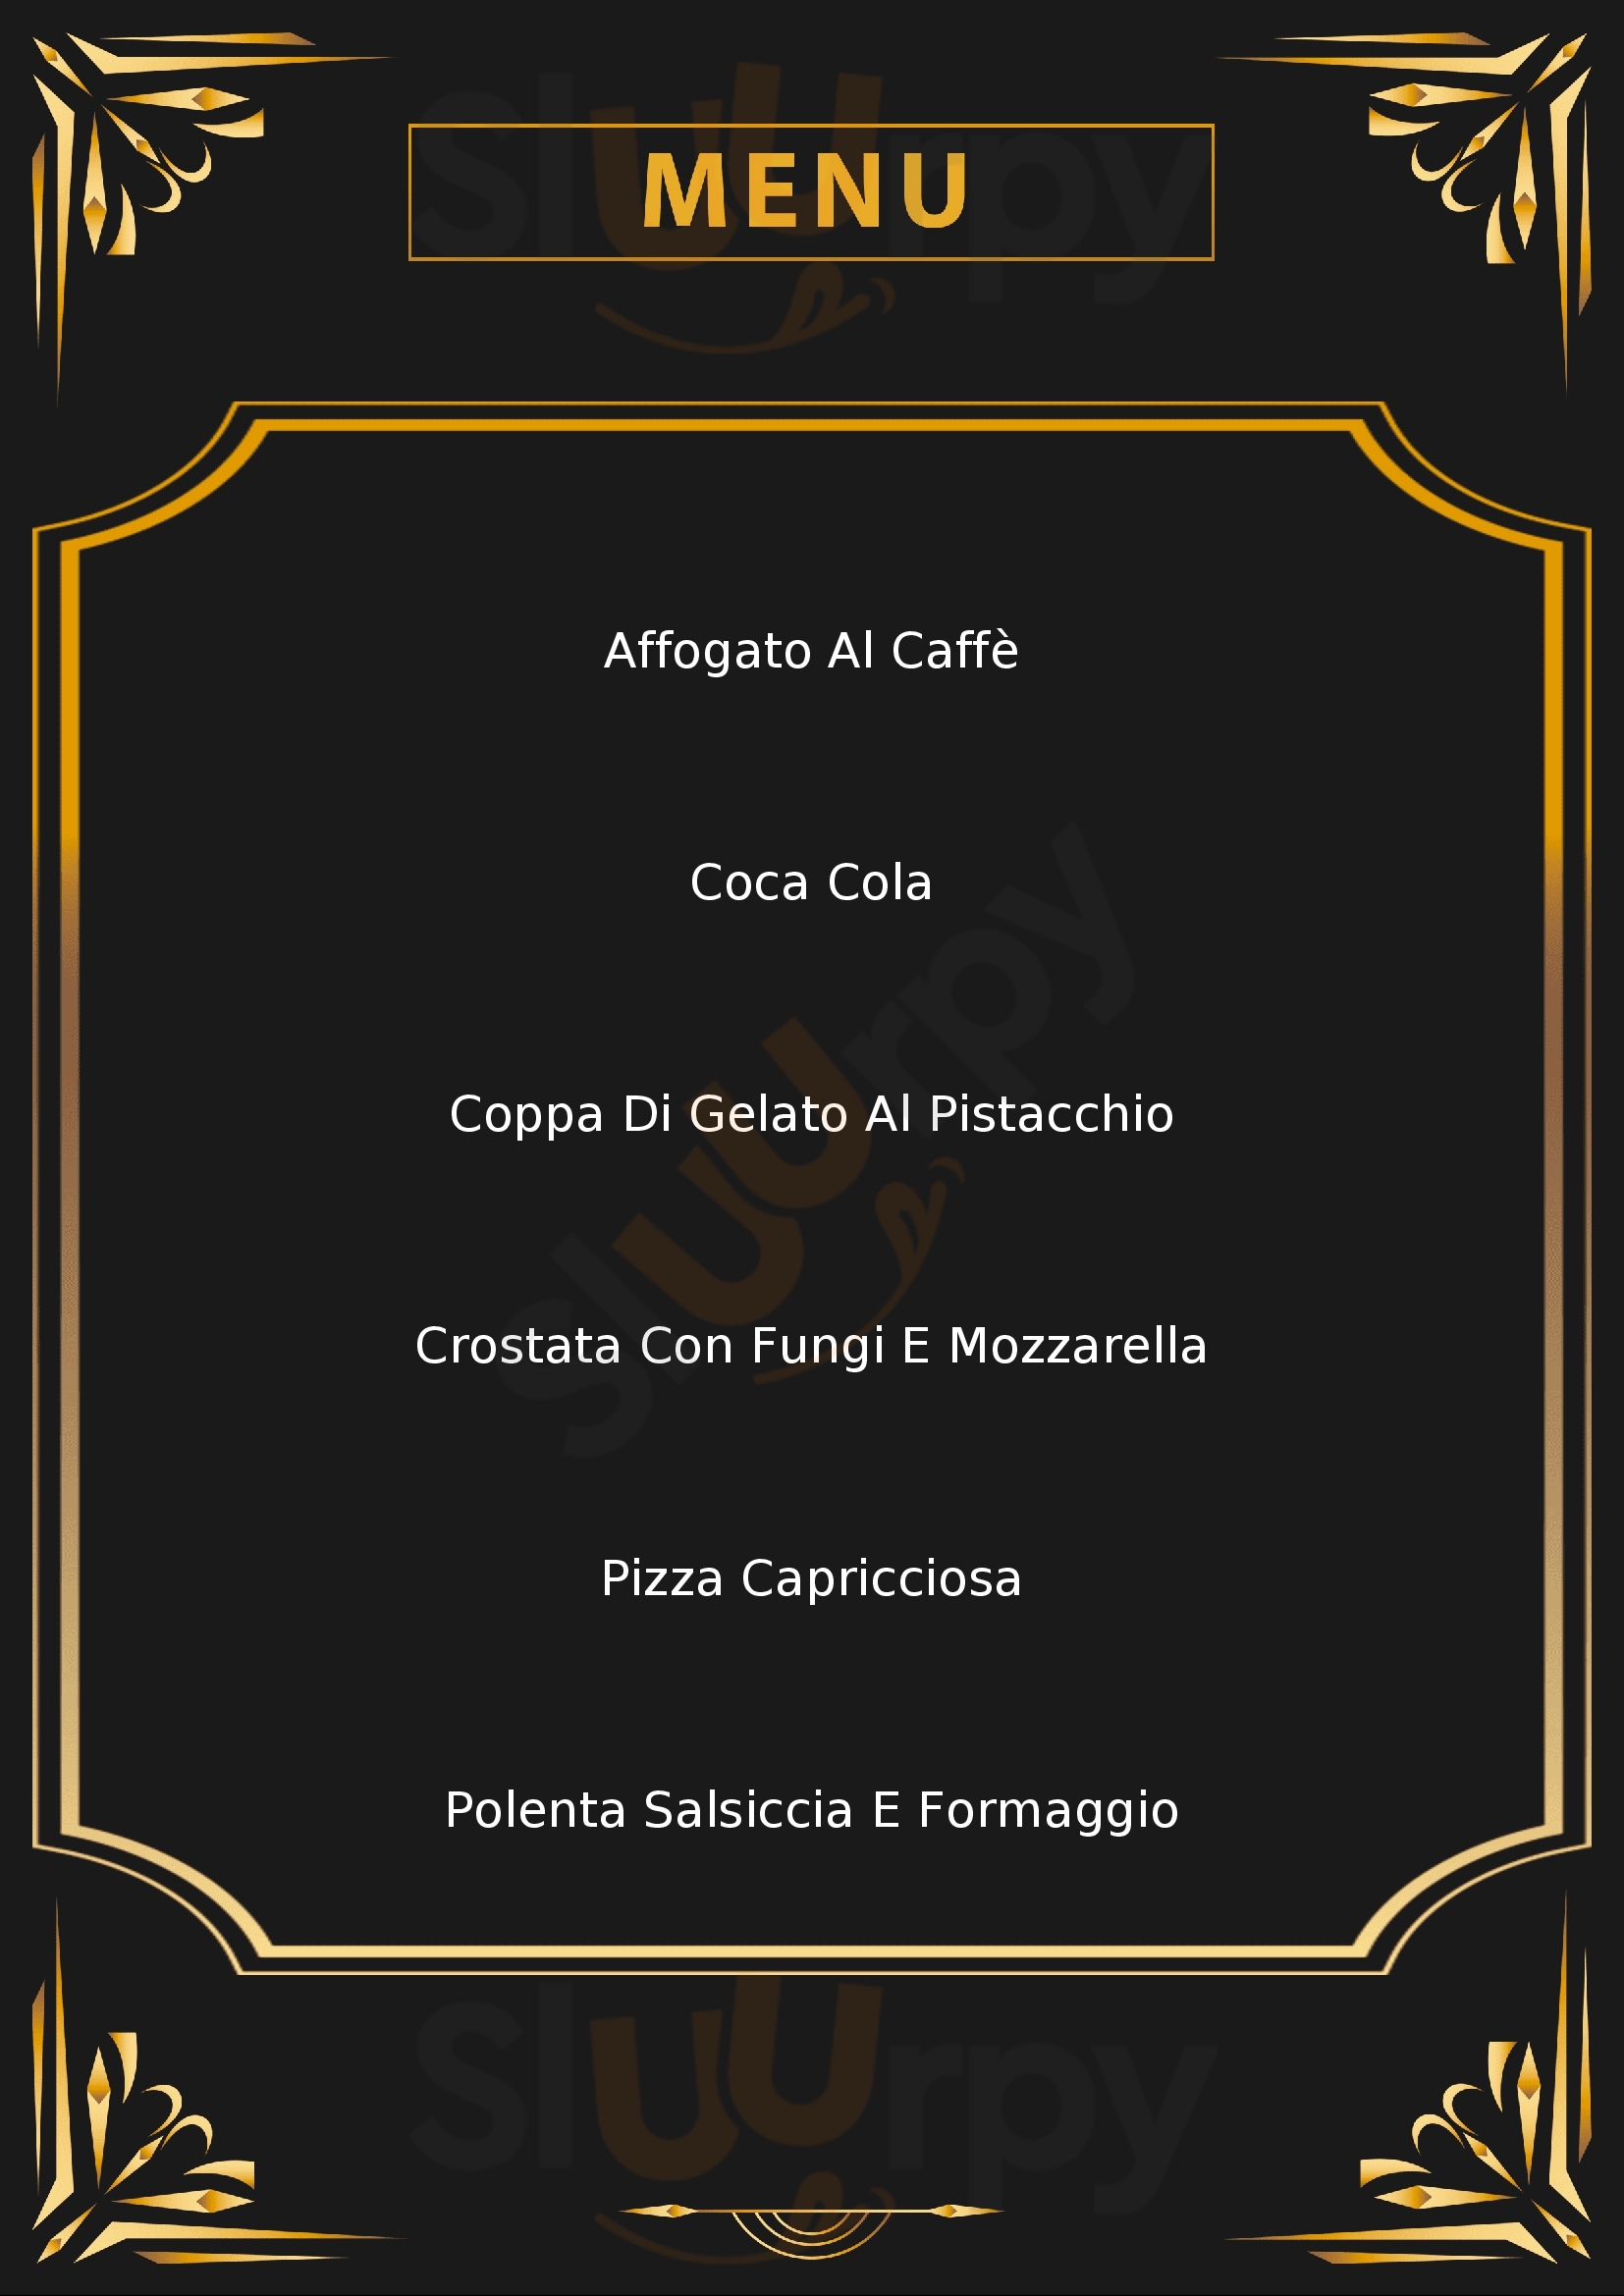 Pizzeria Caffetteria Moderno Selvino menù 1 pagina